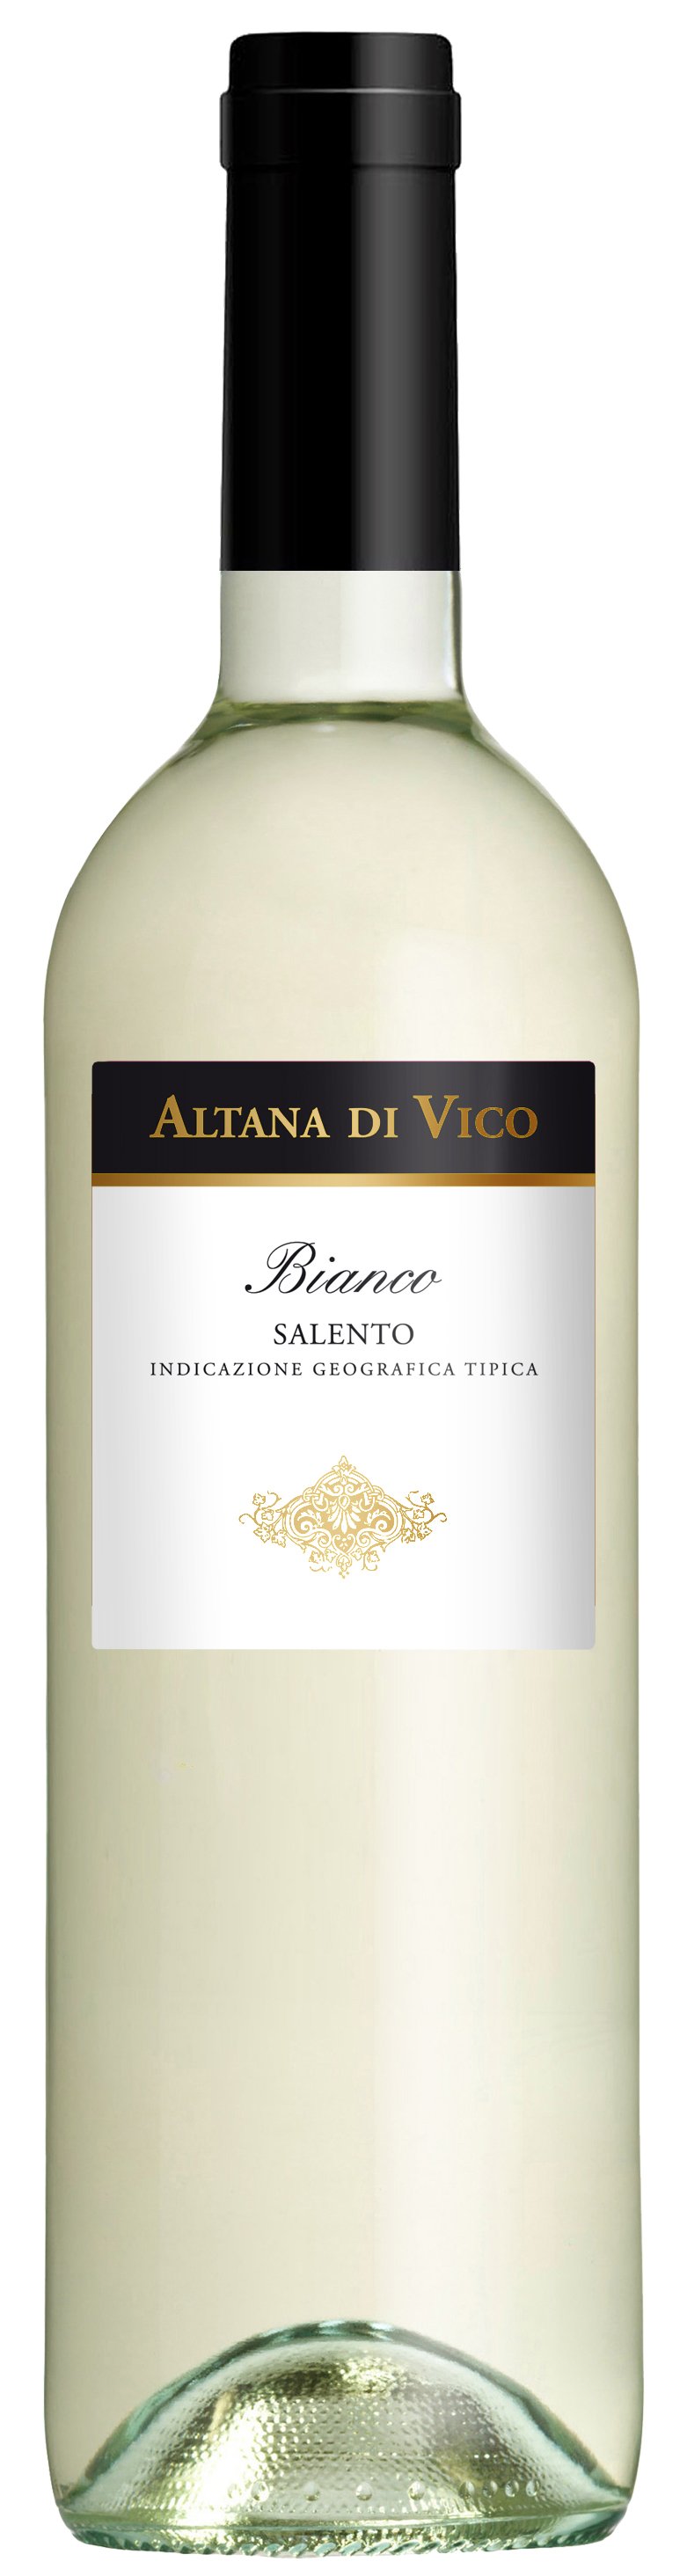 Herske tåbelig visuel Altana di Vico Bianco Salento IGT 12% - PUGLIA (APULIEN) VIN - VIN MED MERE  .DK